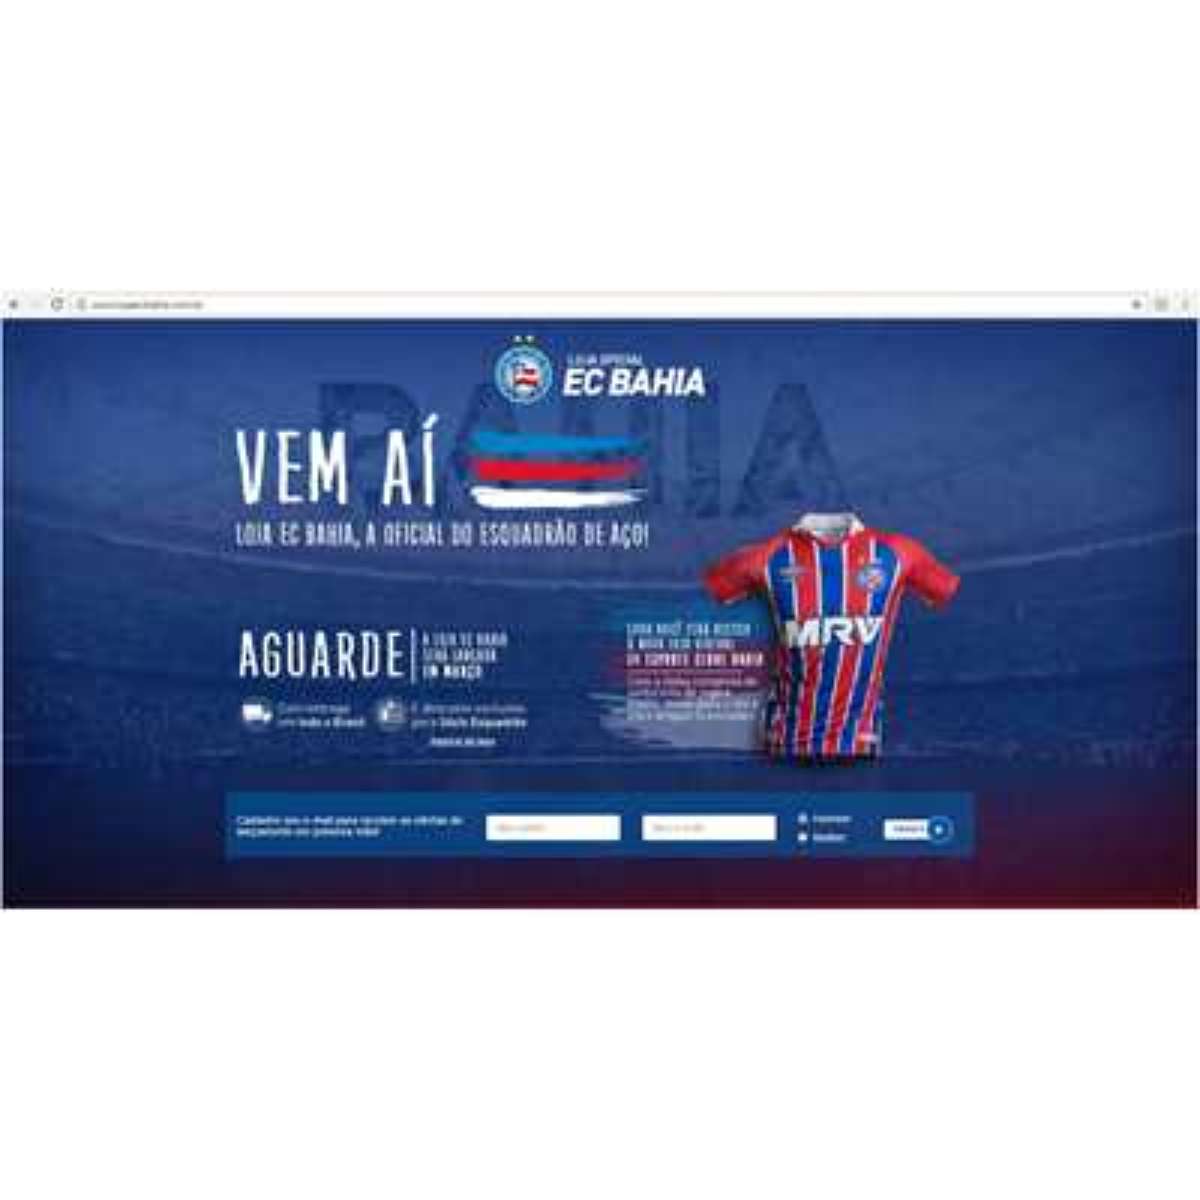 Esporte Clube Bahia lança plataforma de colecionáveis digitais